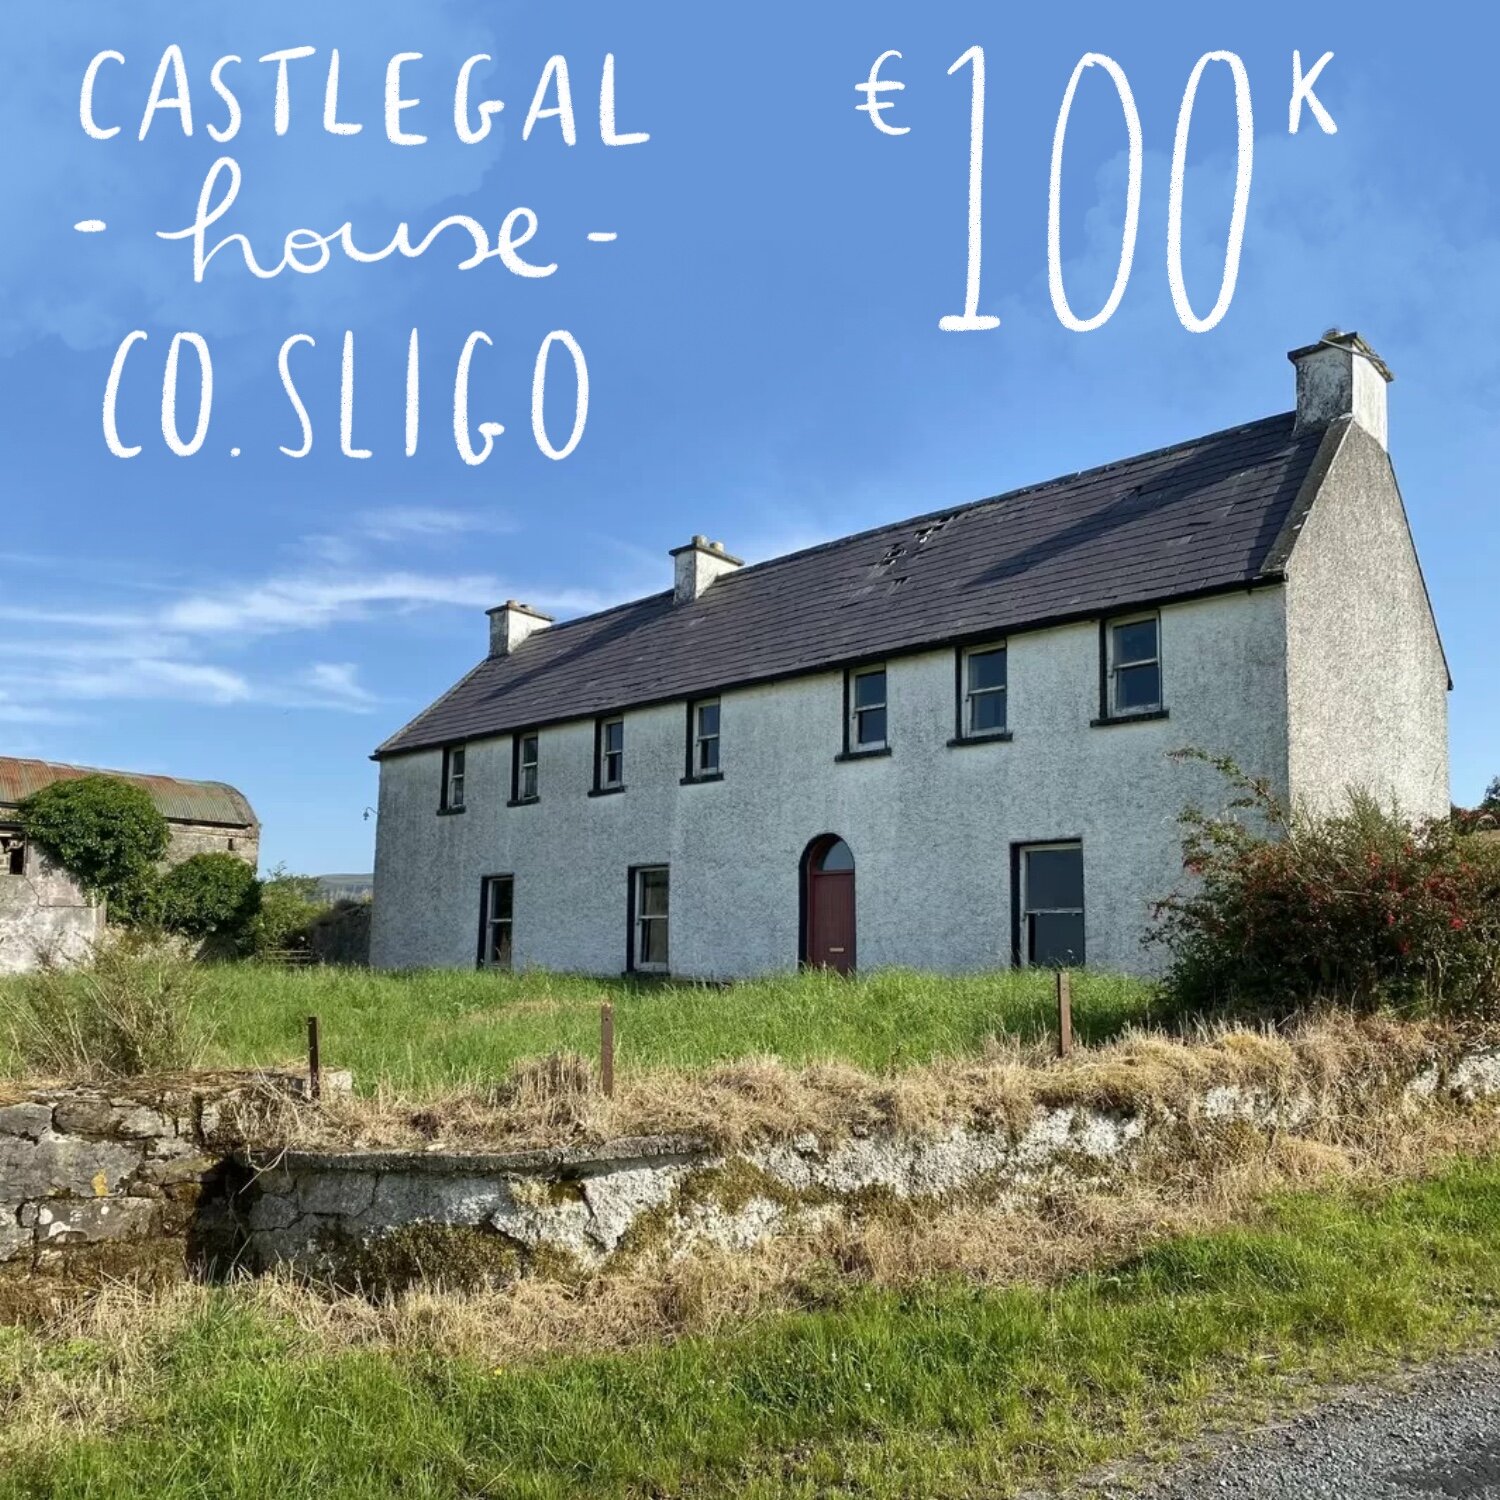 Castlegal House, Castlegal, Colgagh, Co. Sligo. €100k